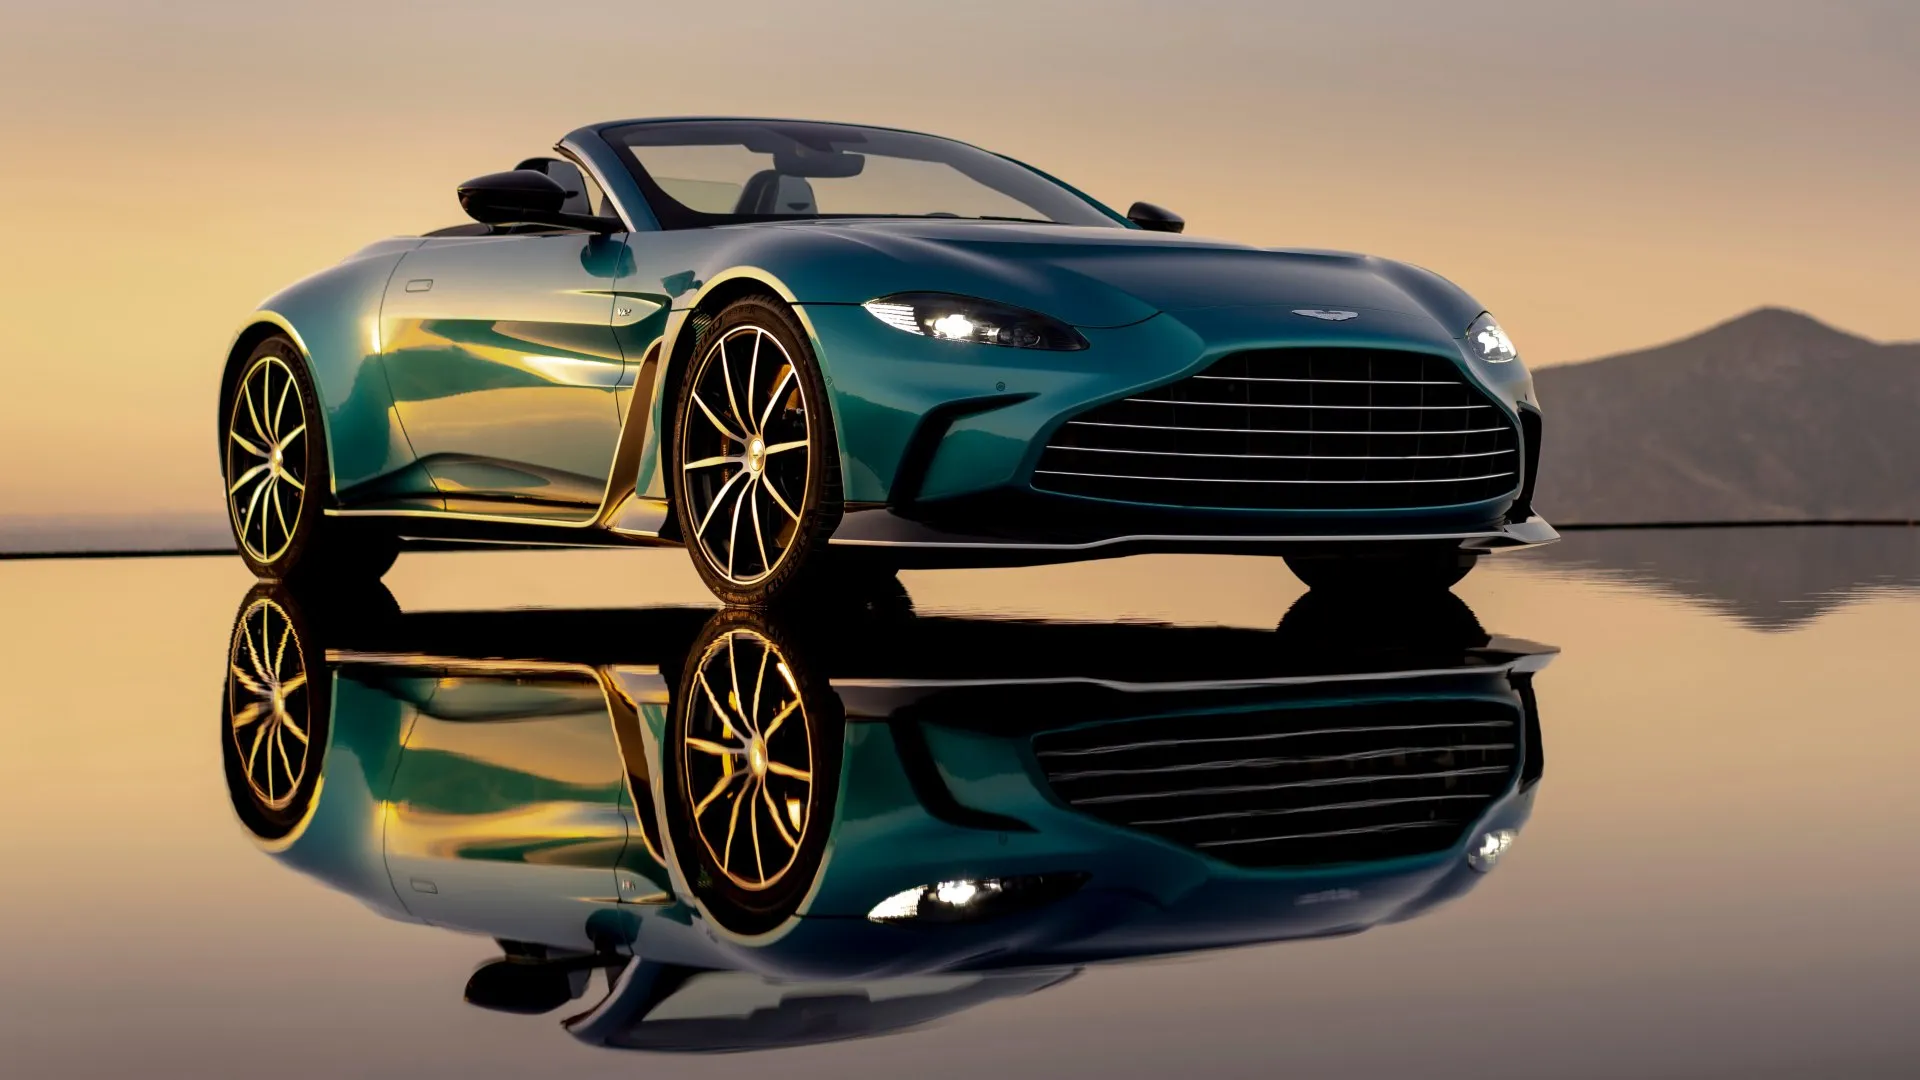 Conocemos al Aston Martin V12 Vantage Roadster, el último de una estirpe